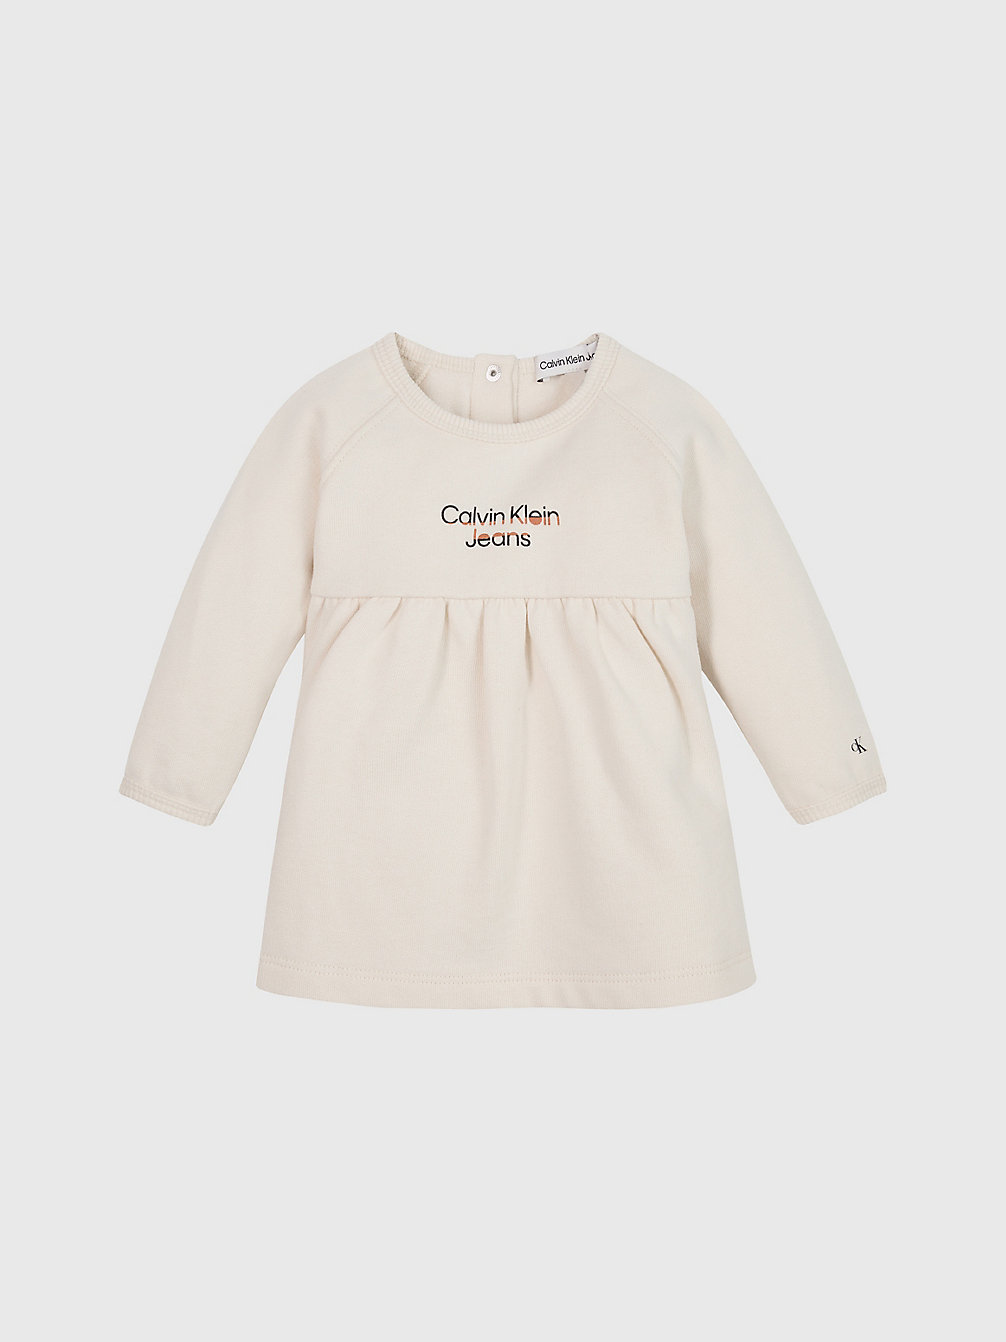 WHITECAP GRAY Robe En Polaire Avec Logo Pour Nouveau-Né undefined undefined Calvin Klein